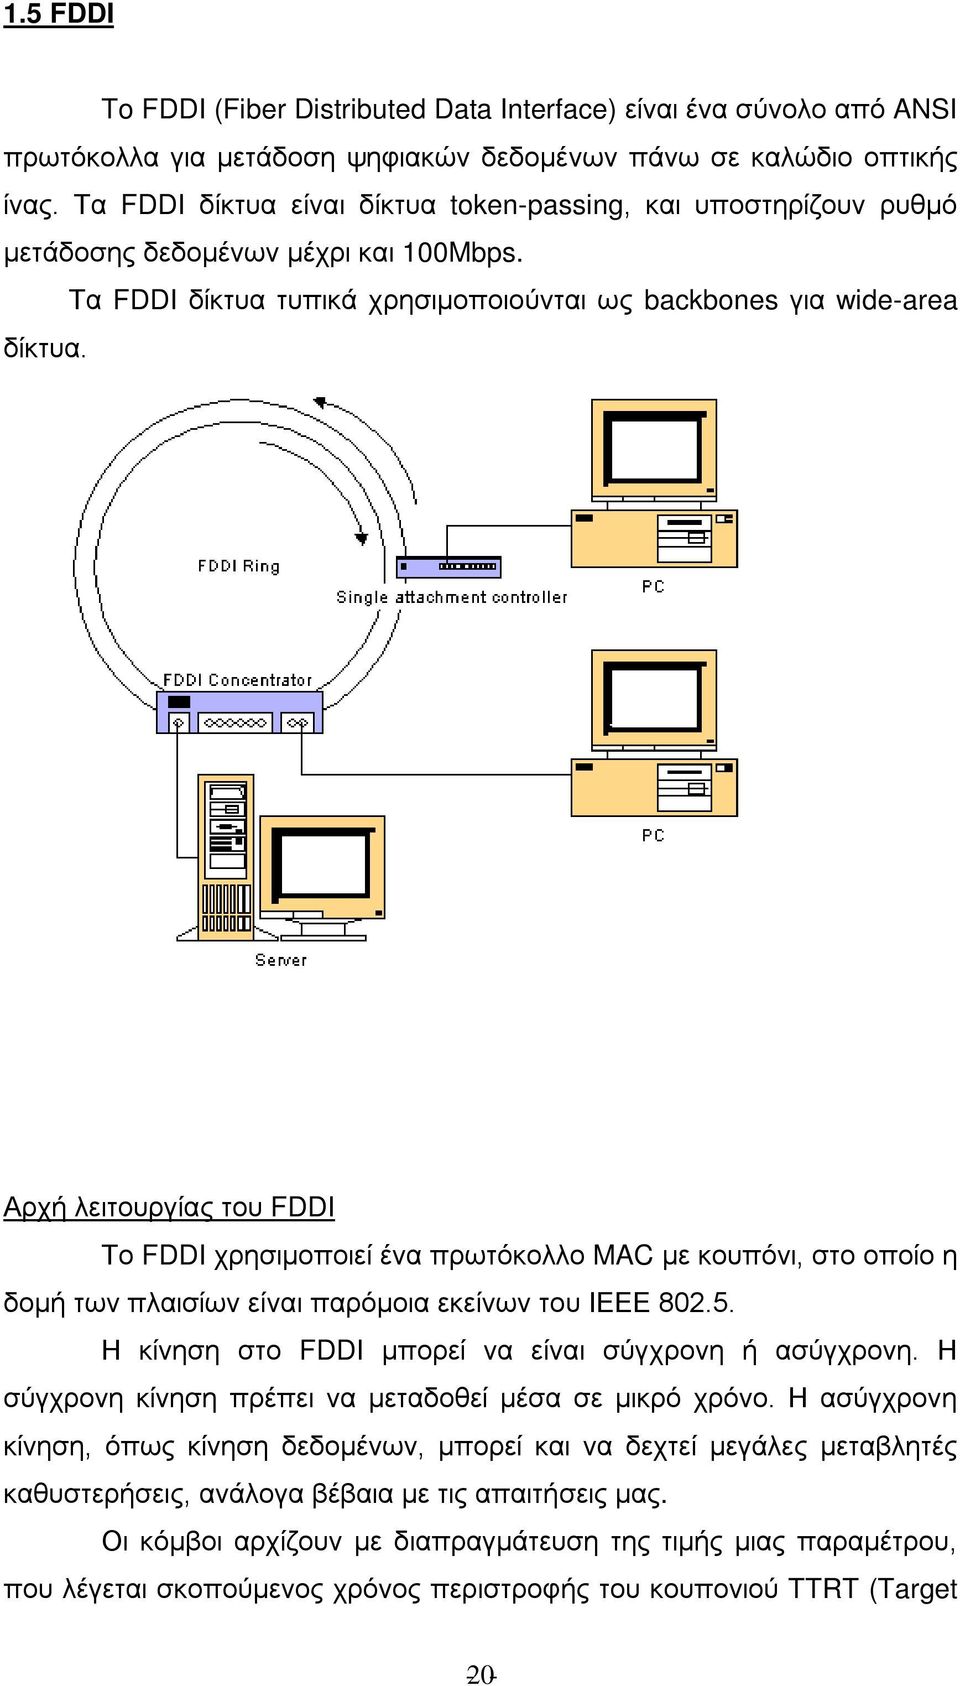 Αρχή λειτουργίας του FDDI Το FDDI χρησιμοποιεί ένα πρωτόκολλο MAC με κουπόνι, στο οποίο η δομή των πλαισίων είναι παρόμοια εκείνων του ΙΕΕΕ 802.5.